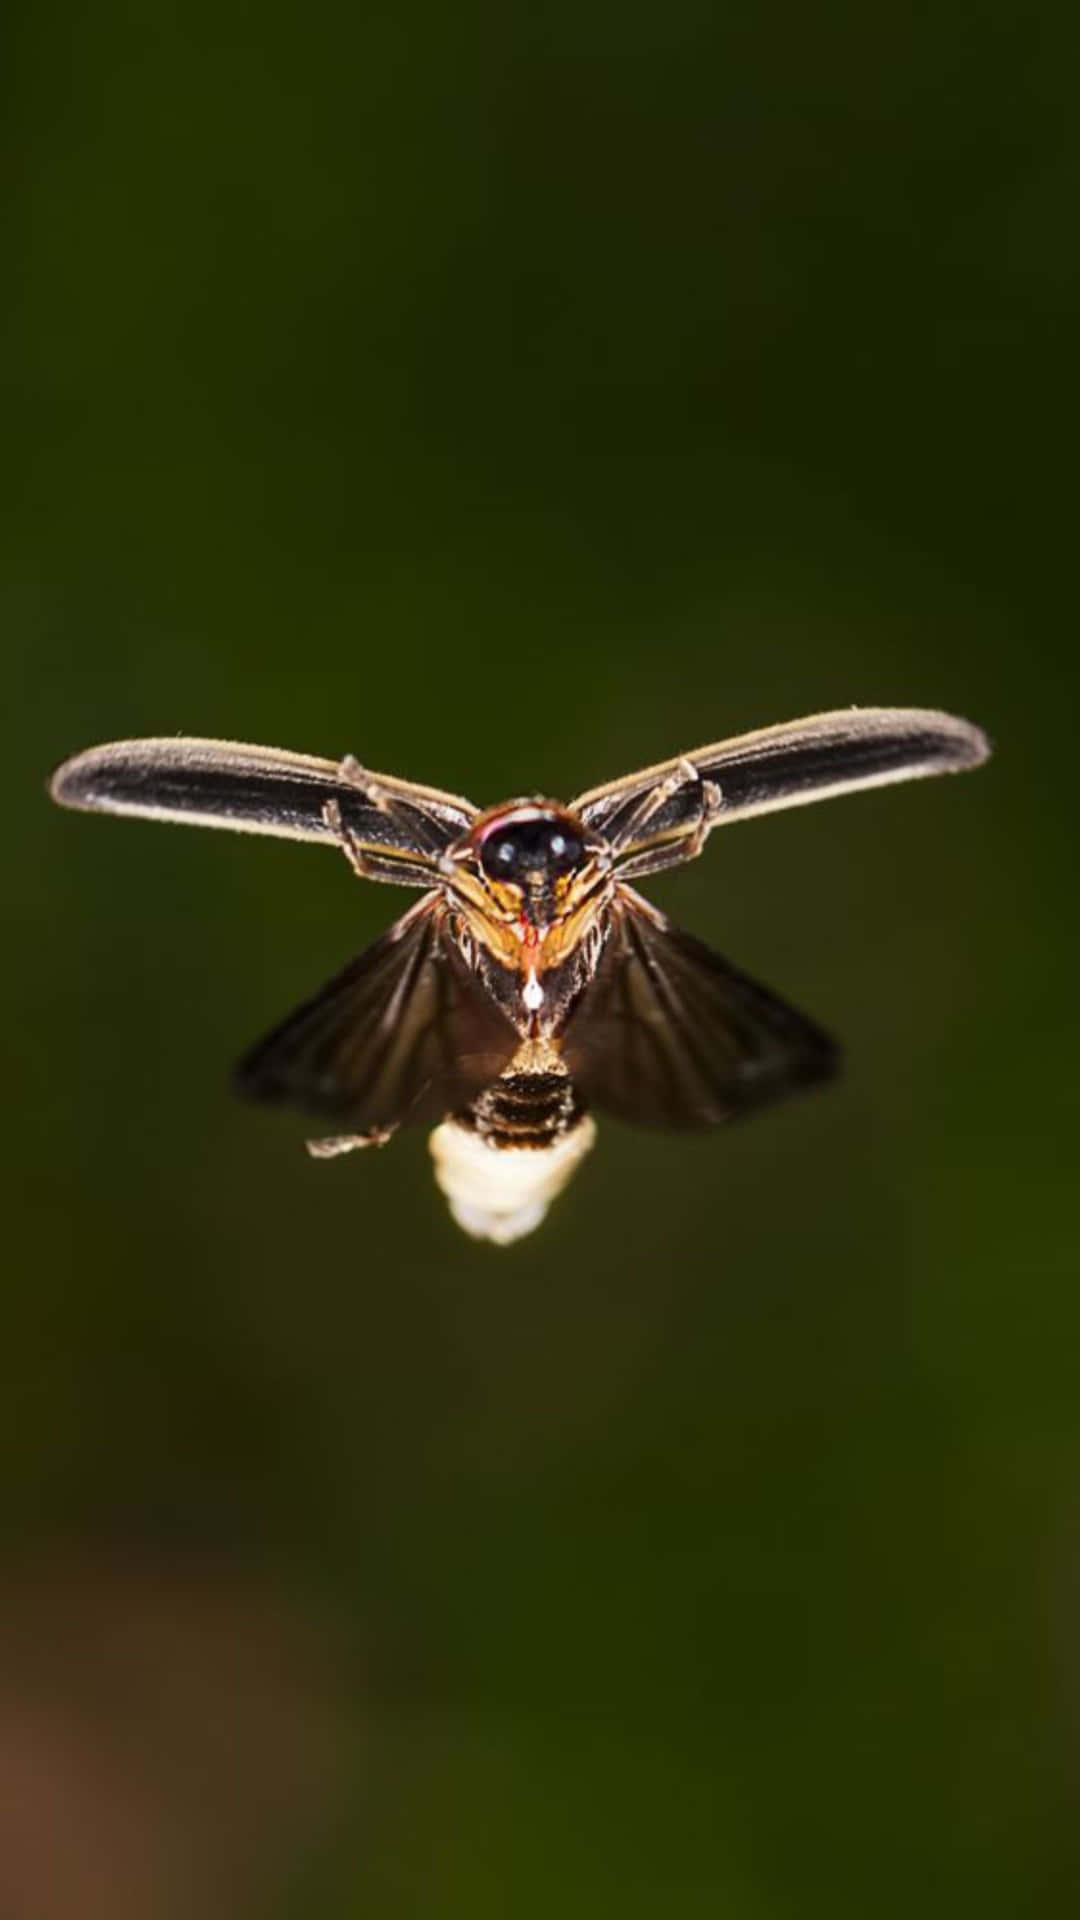 Firefly In Flight Glowing Tail Wallpaper